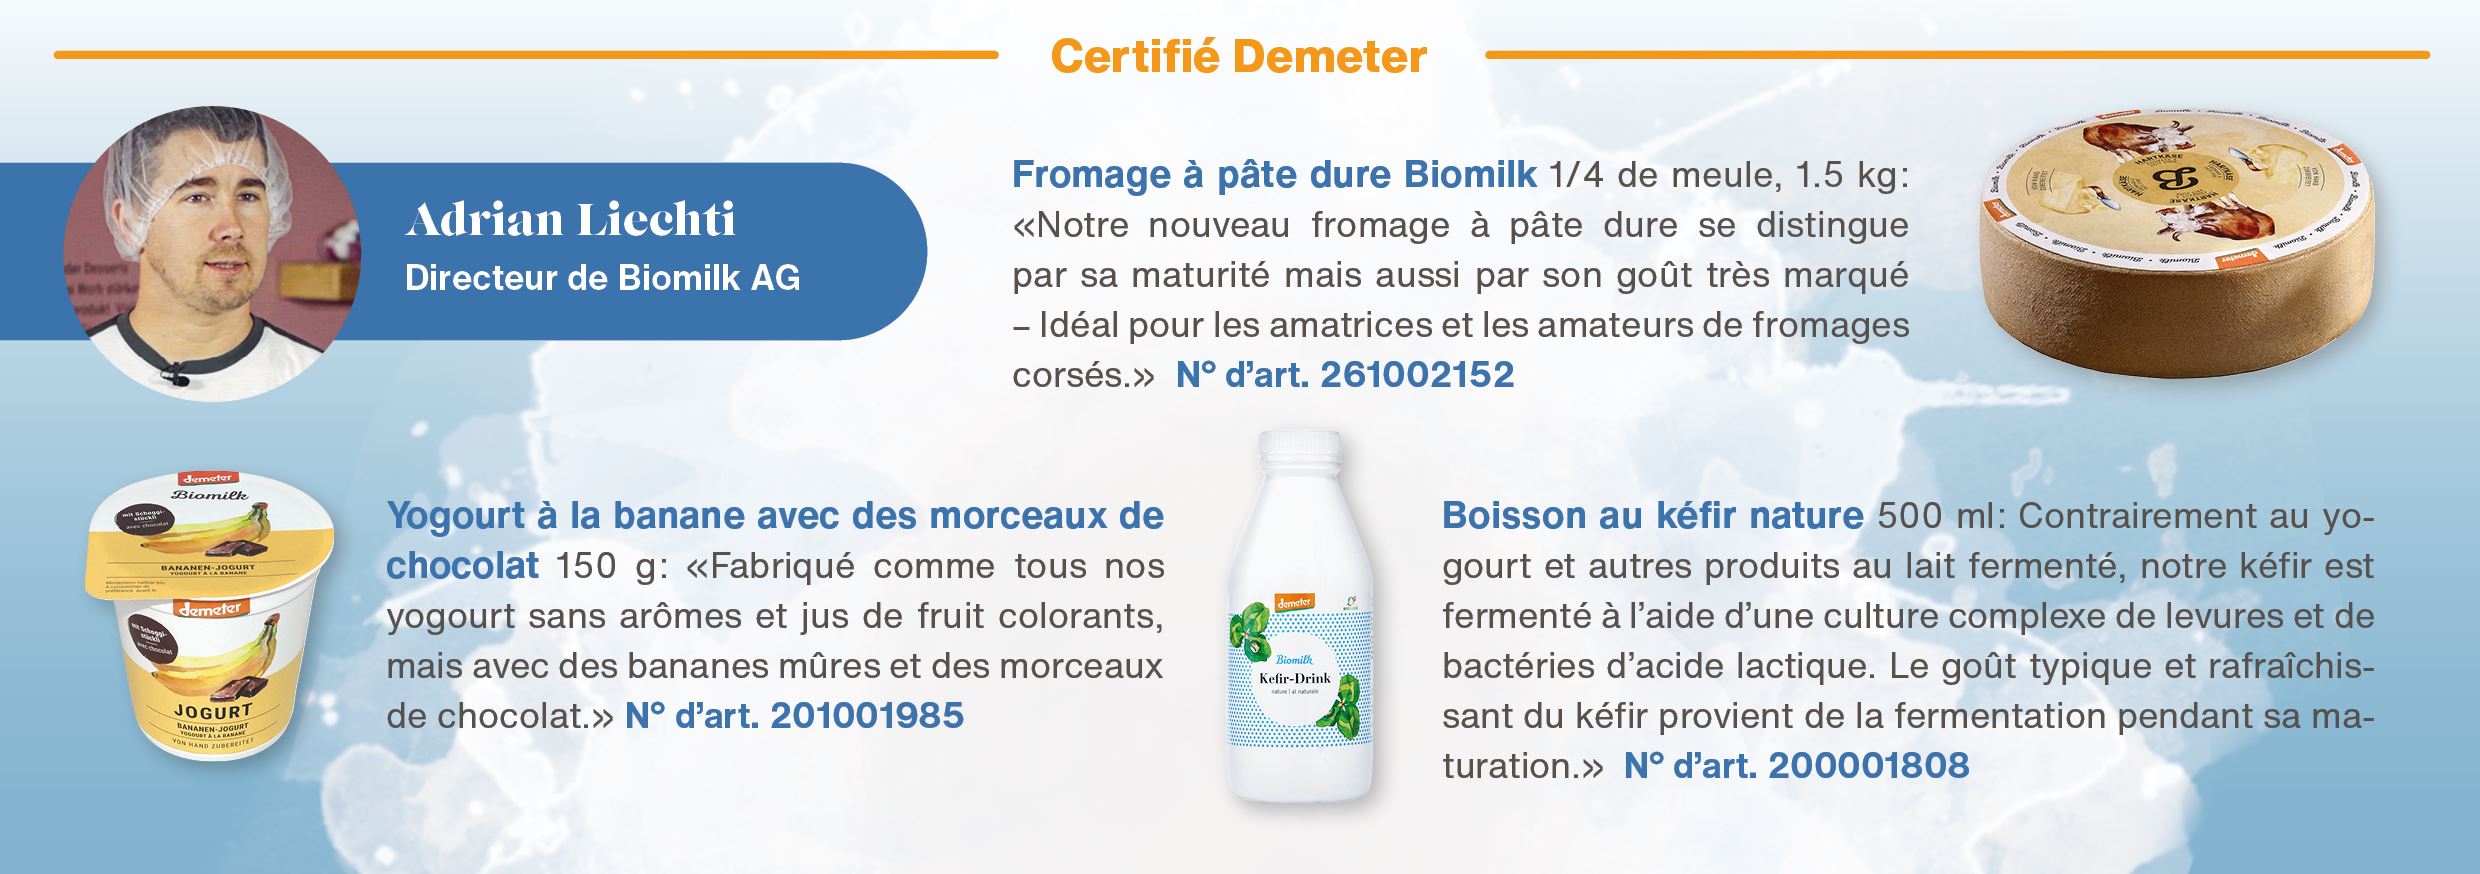 202405 SF Biomilk FR